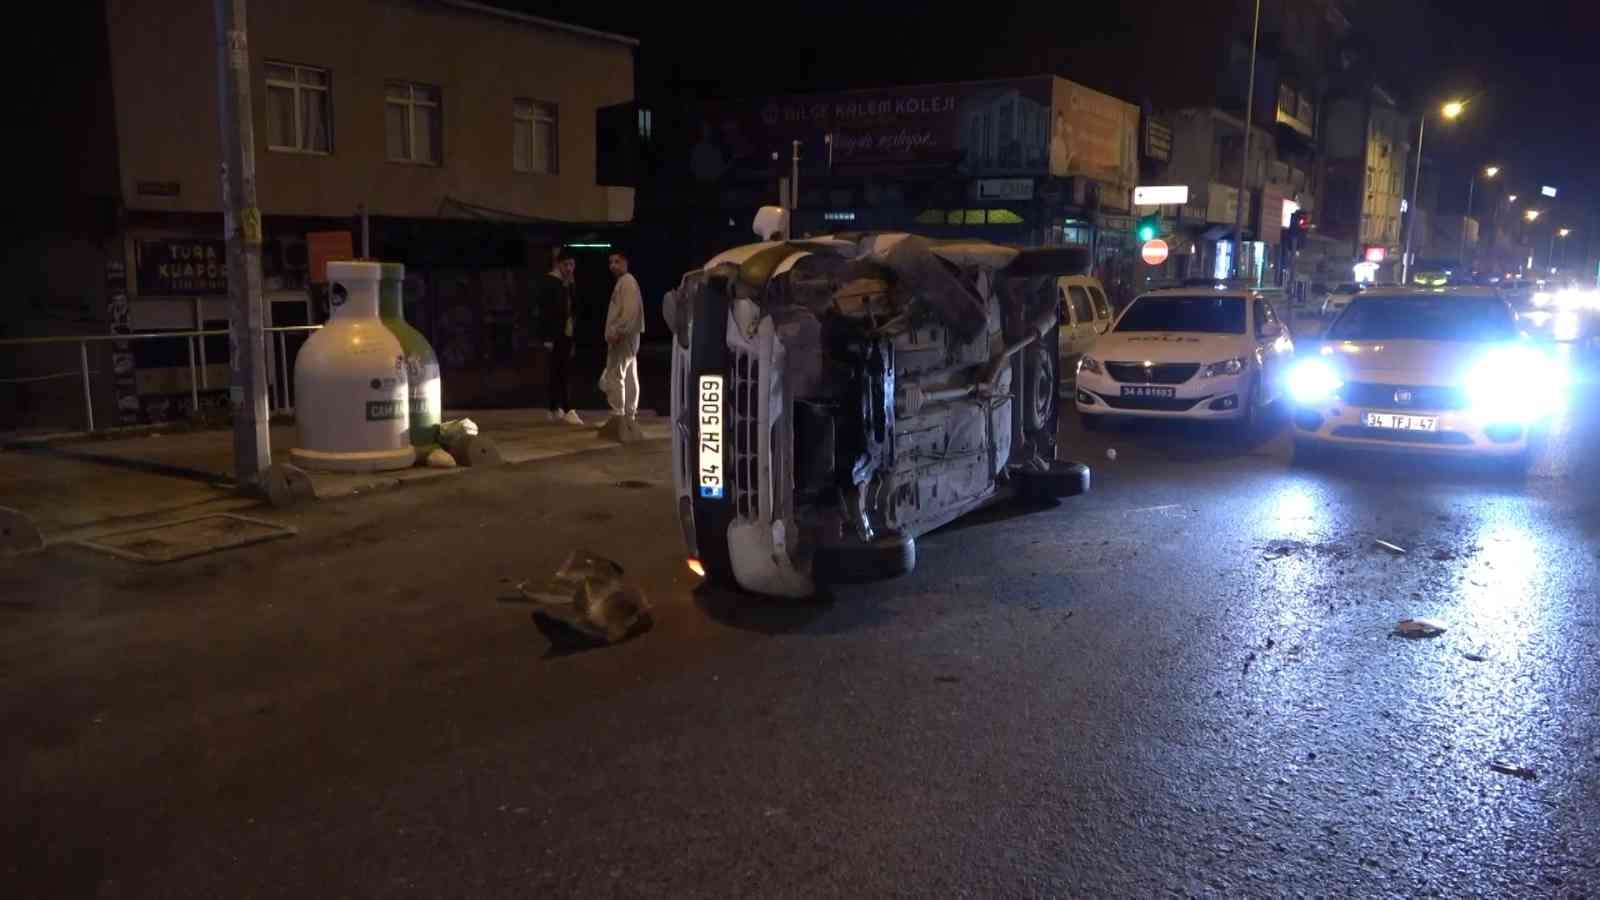 Arnavutköy’de kontrolden çıkan araç yan yattı #istanbul